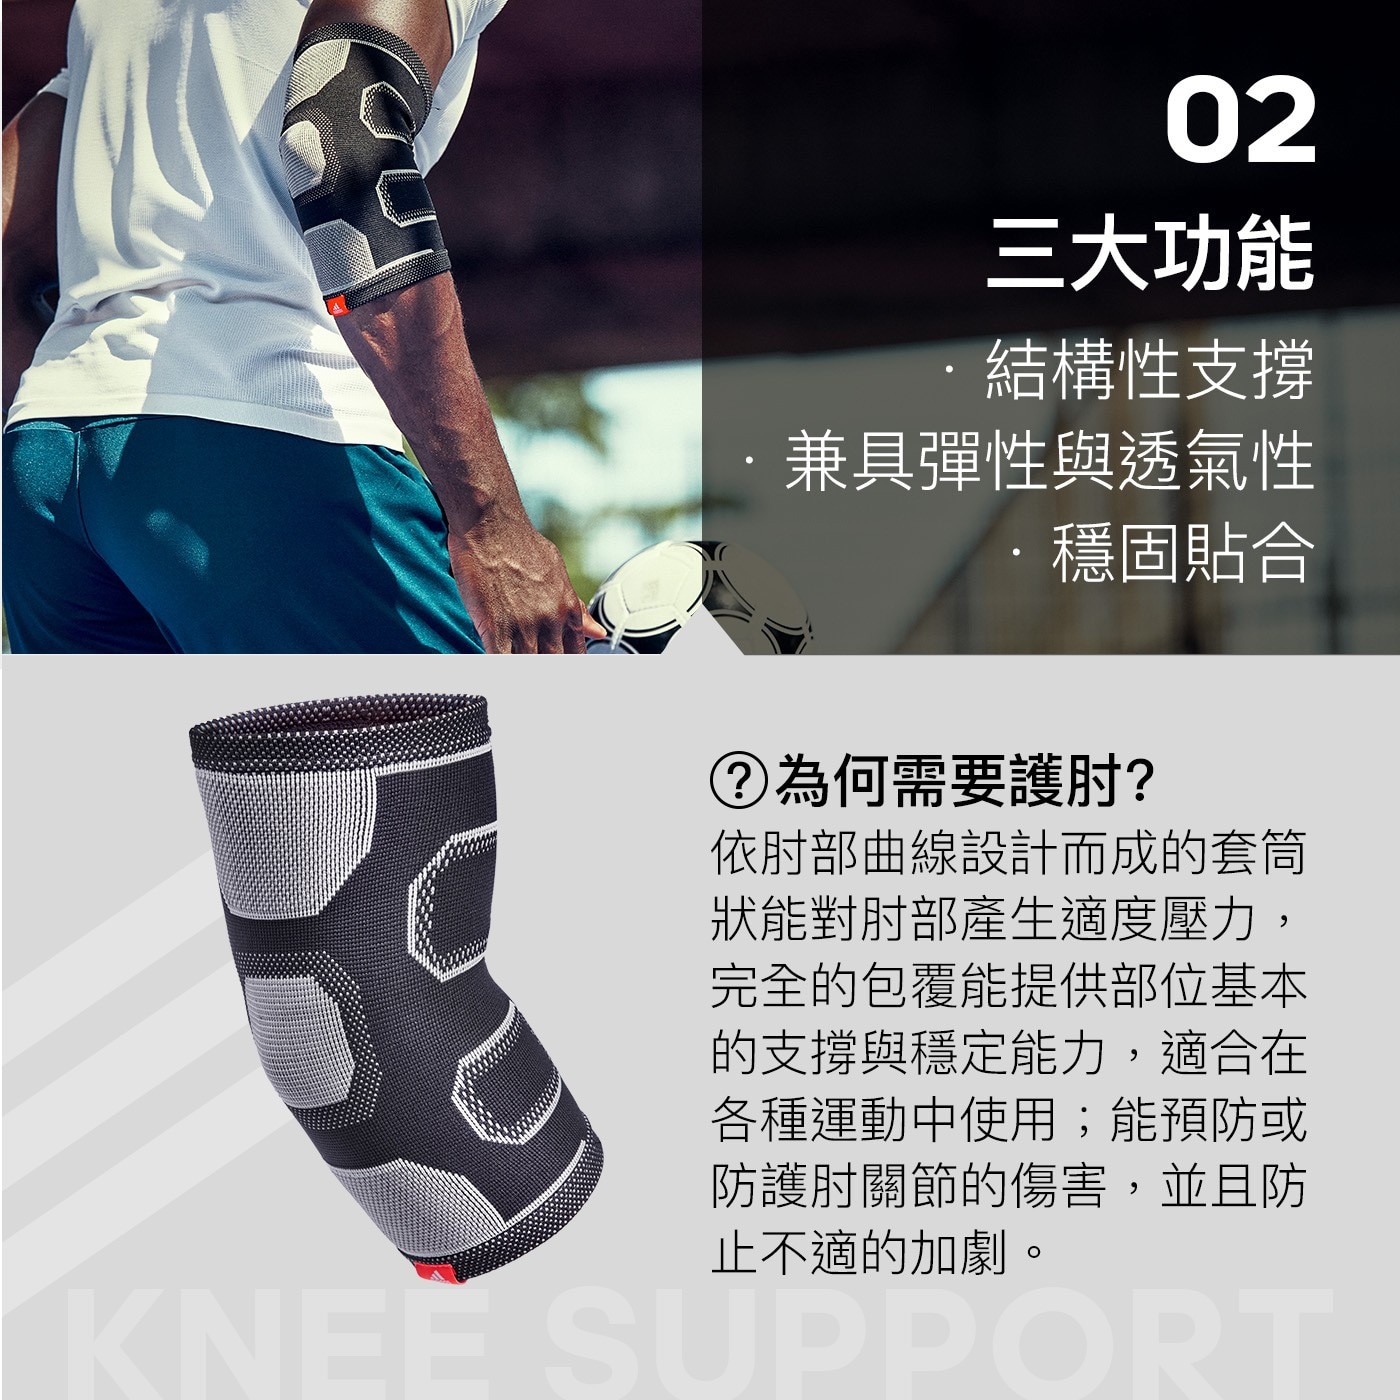 Adidas 肘關節用高性能護套 2入踝關節用高性能護套結構性穩固貼合專業運動訓練支撐